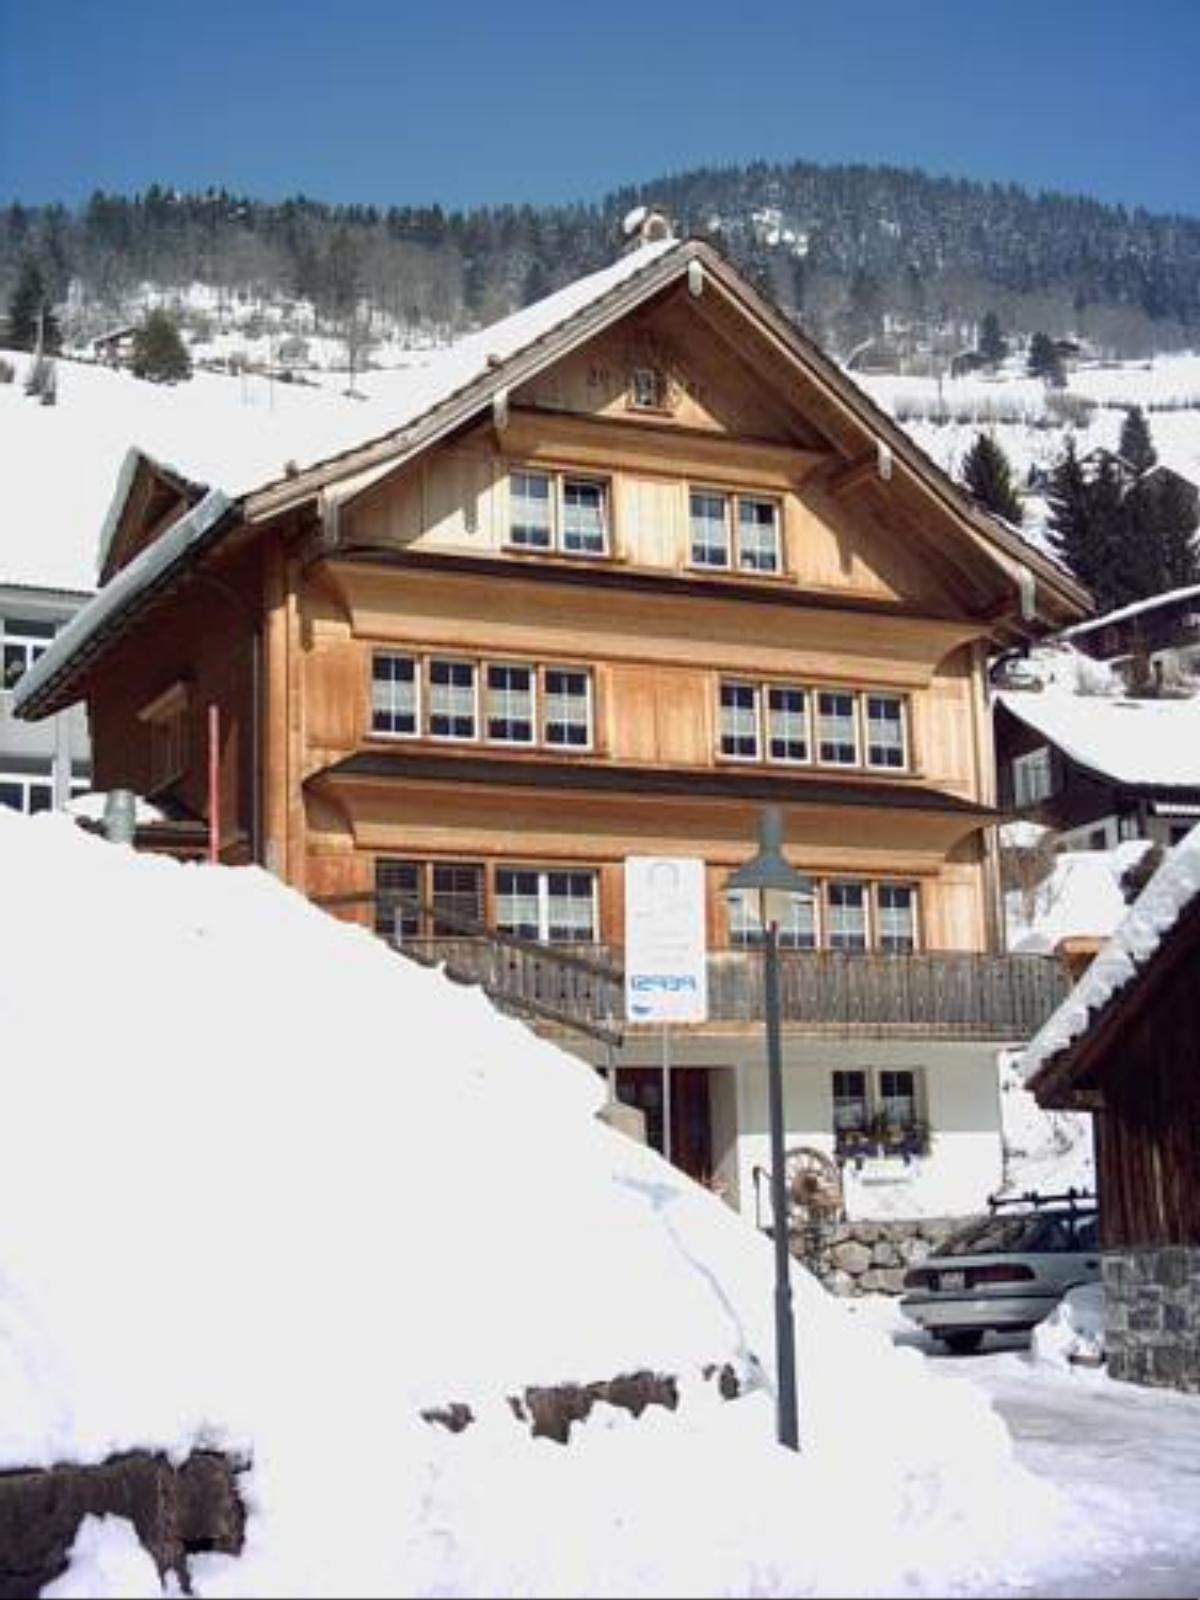 Gasthaus Schäfli Hotel Alt Sankt Johann Switzerland